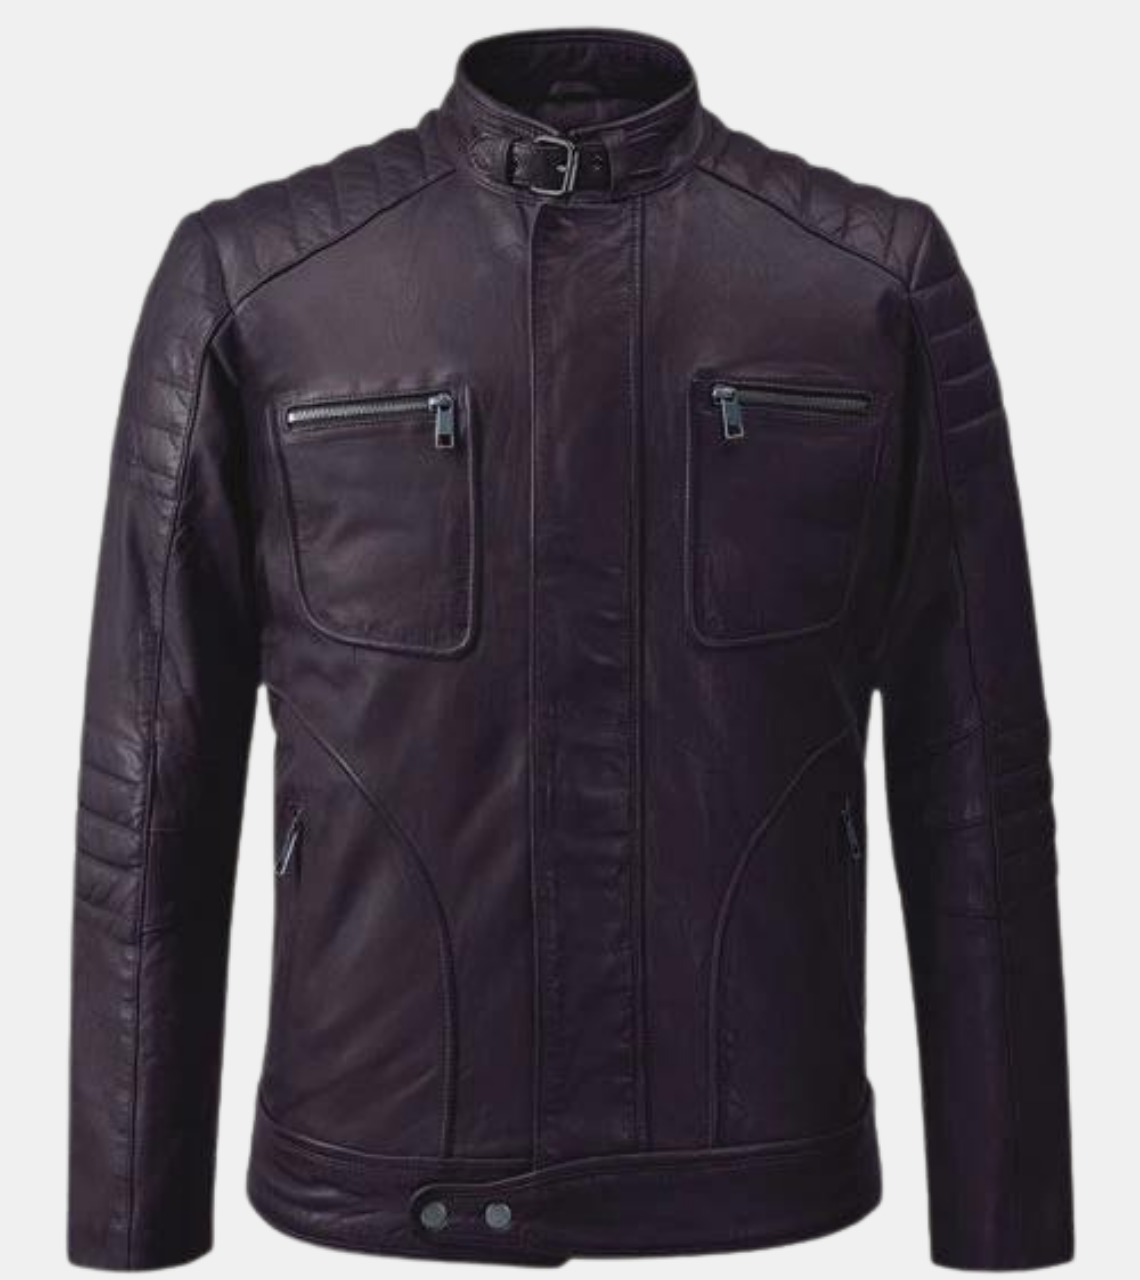  Men's Violet Quilted Leather Jacket